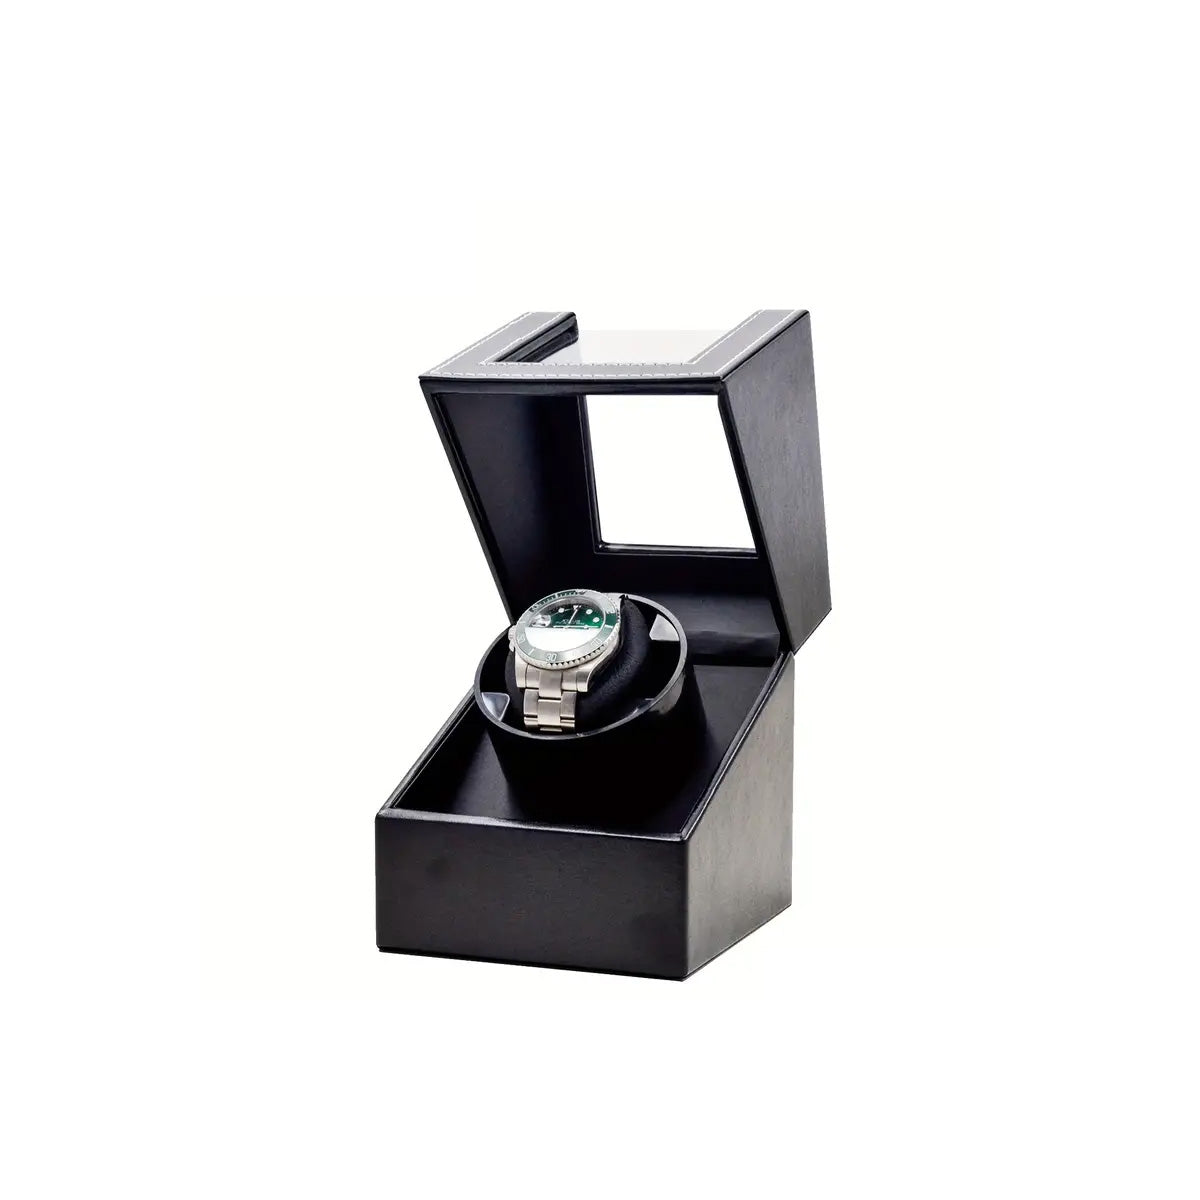 Single Automatic Watch Winder Box - Black PU